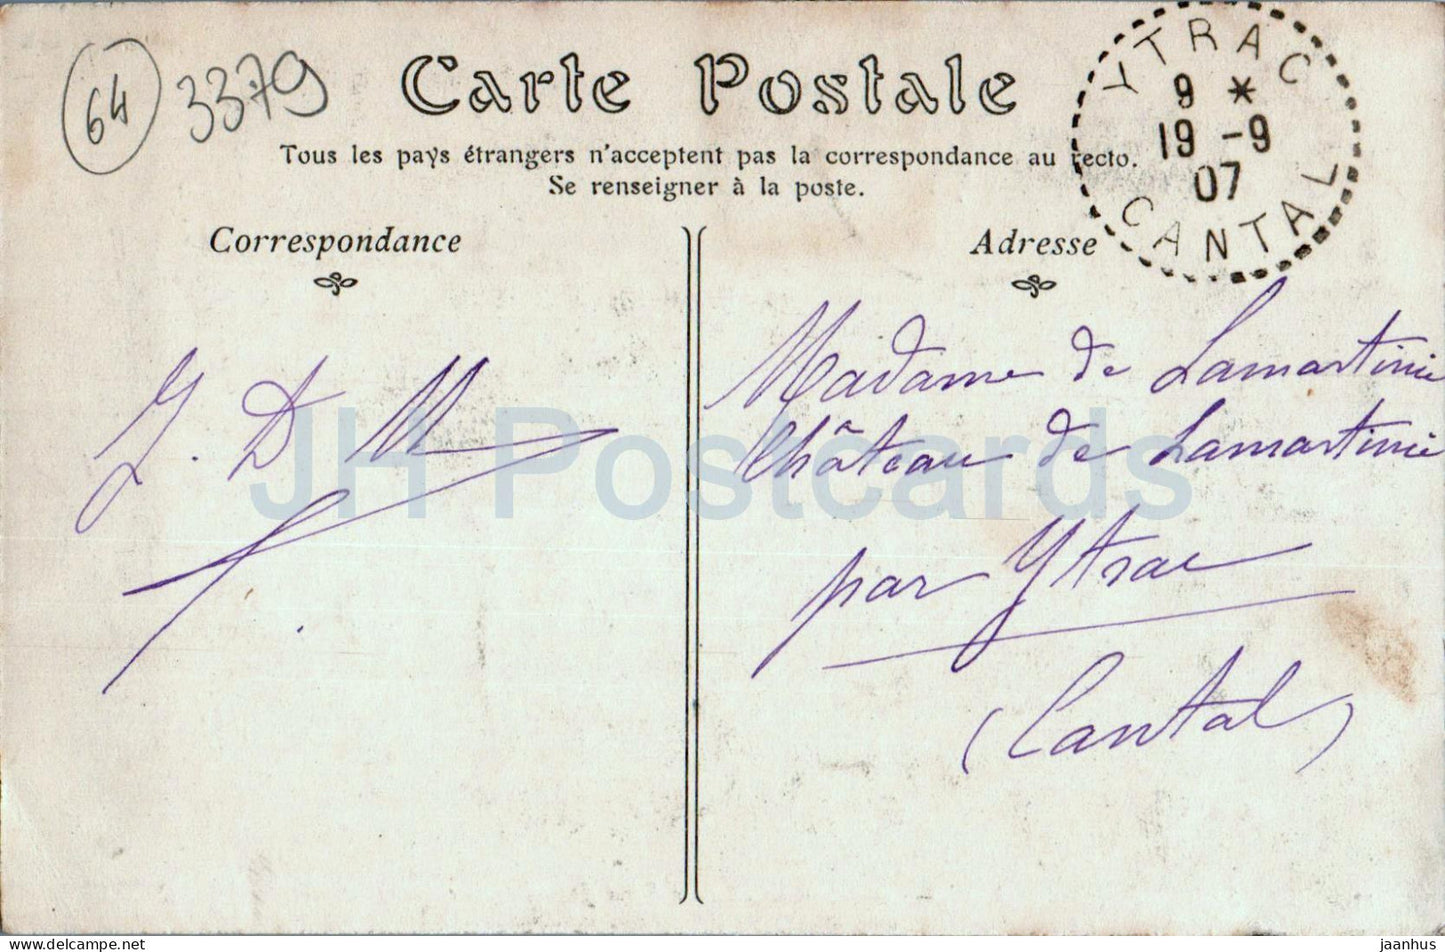 Saint Jean de Luz - Interieur de l'Eglise Saint Jean Baptiste - Kirche - 13 - alte Postkarte - 1907 - Frankreich - gebraucht 